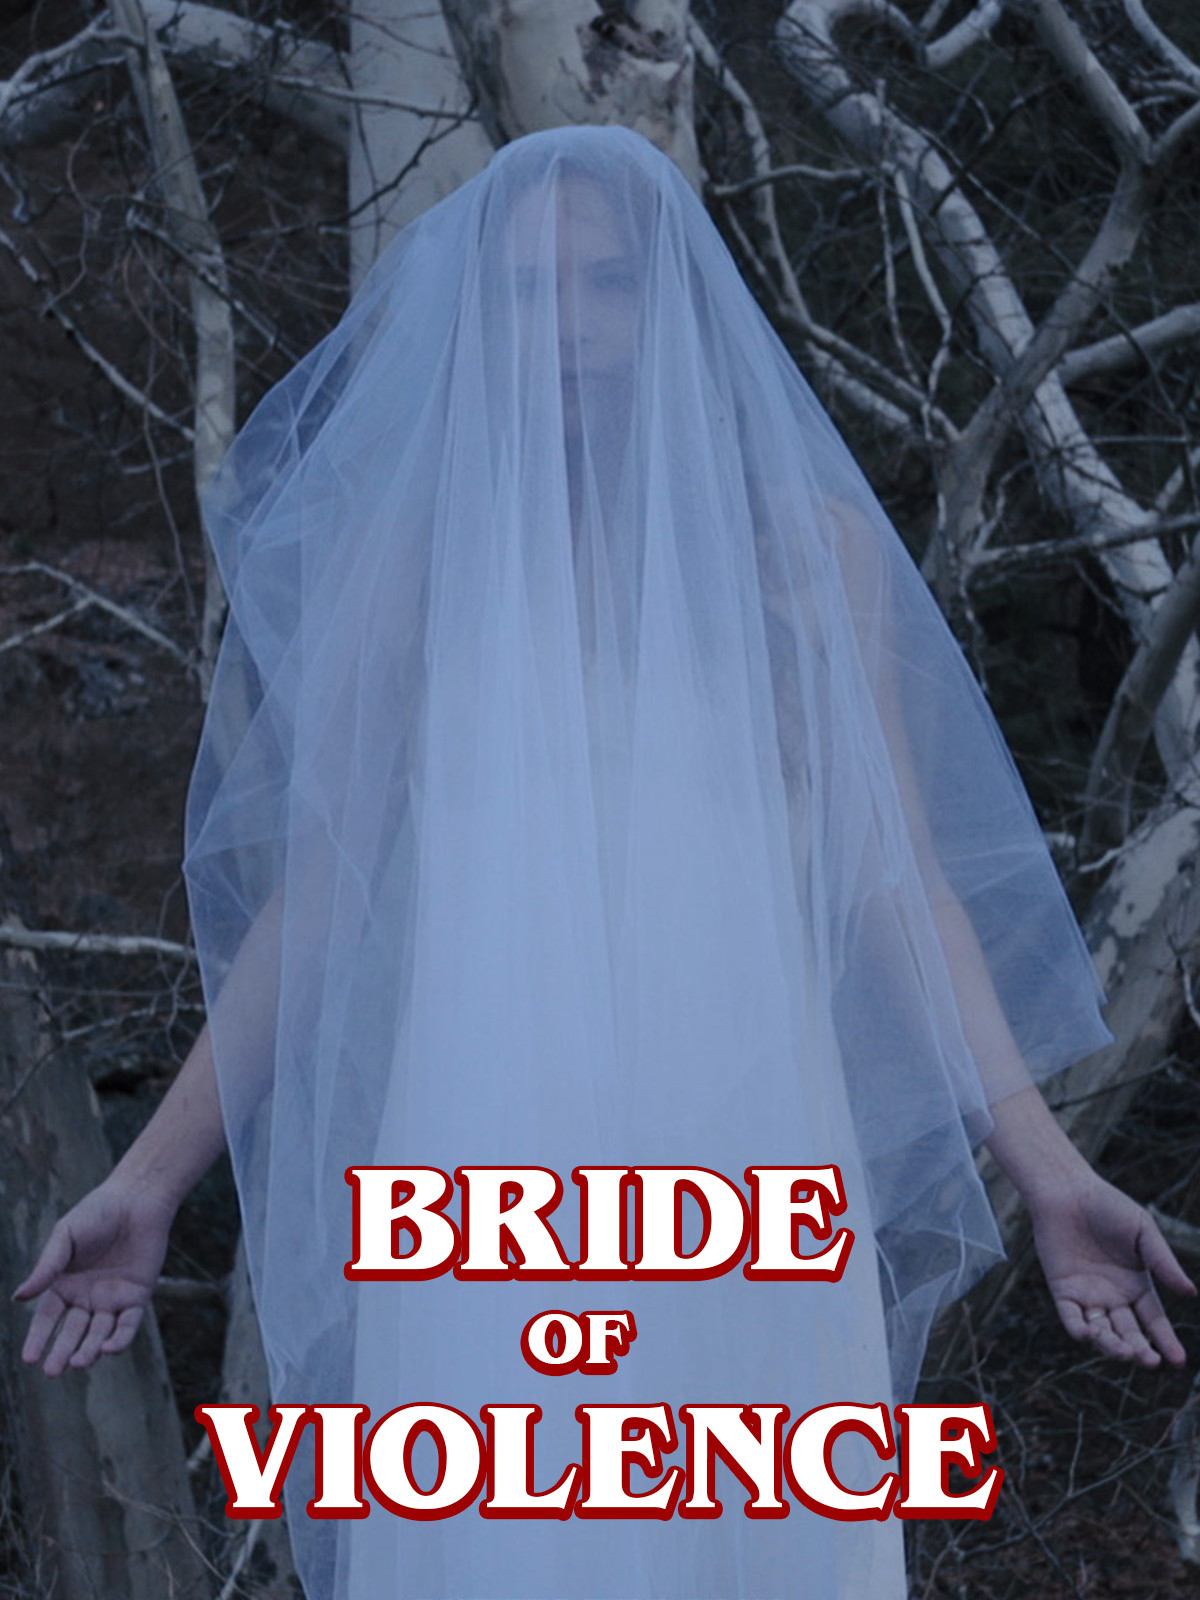 Bride of Violence (2018)